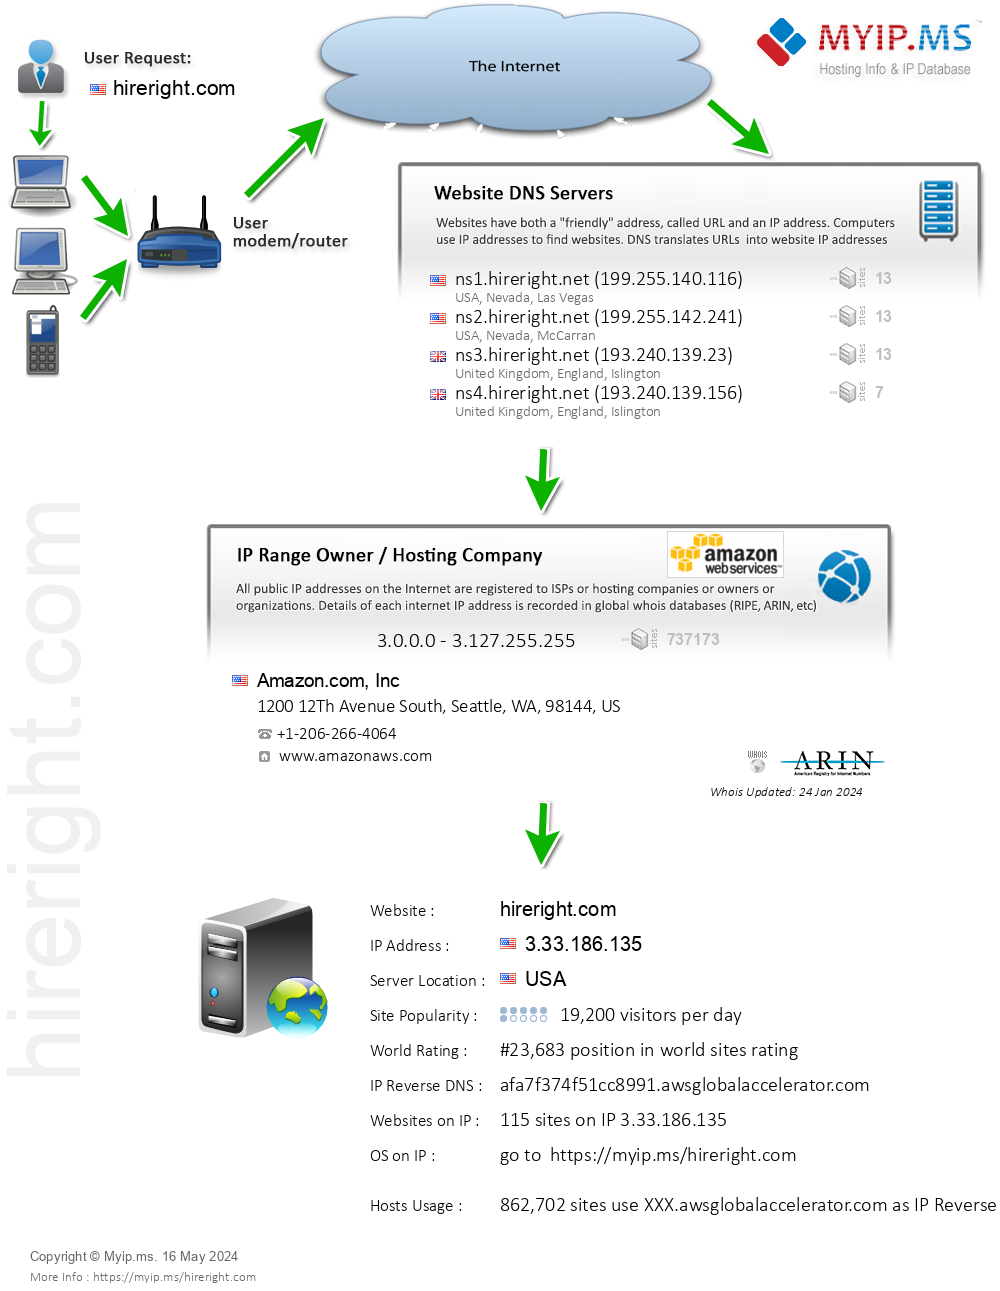 Hireright.com - Website Hosting Visual IP Diagram